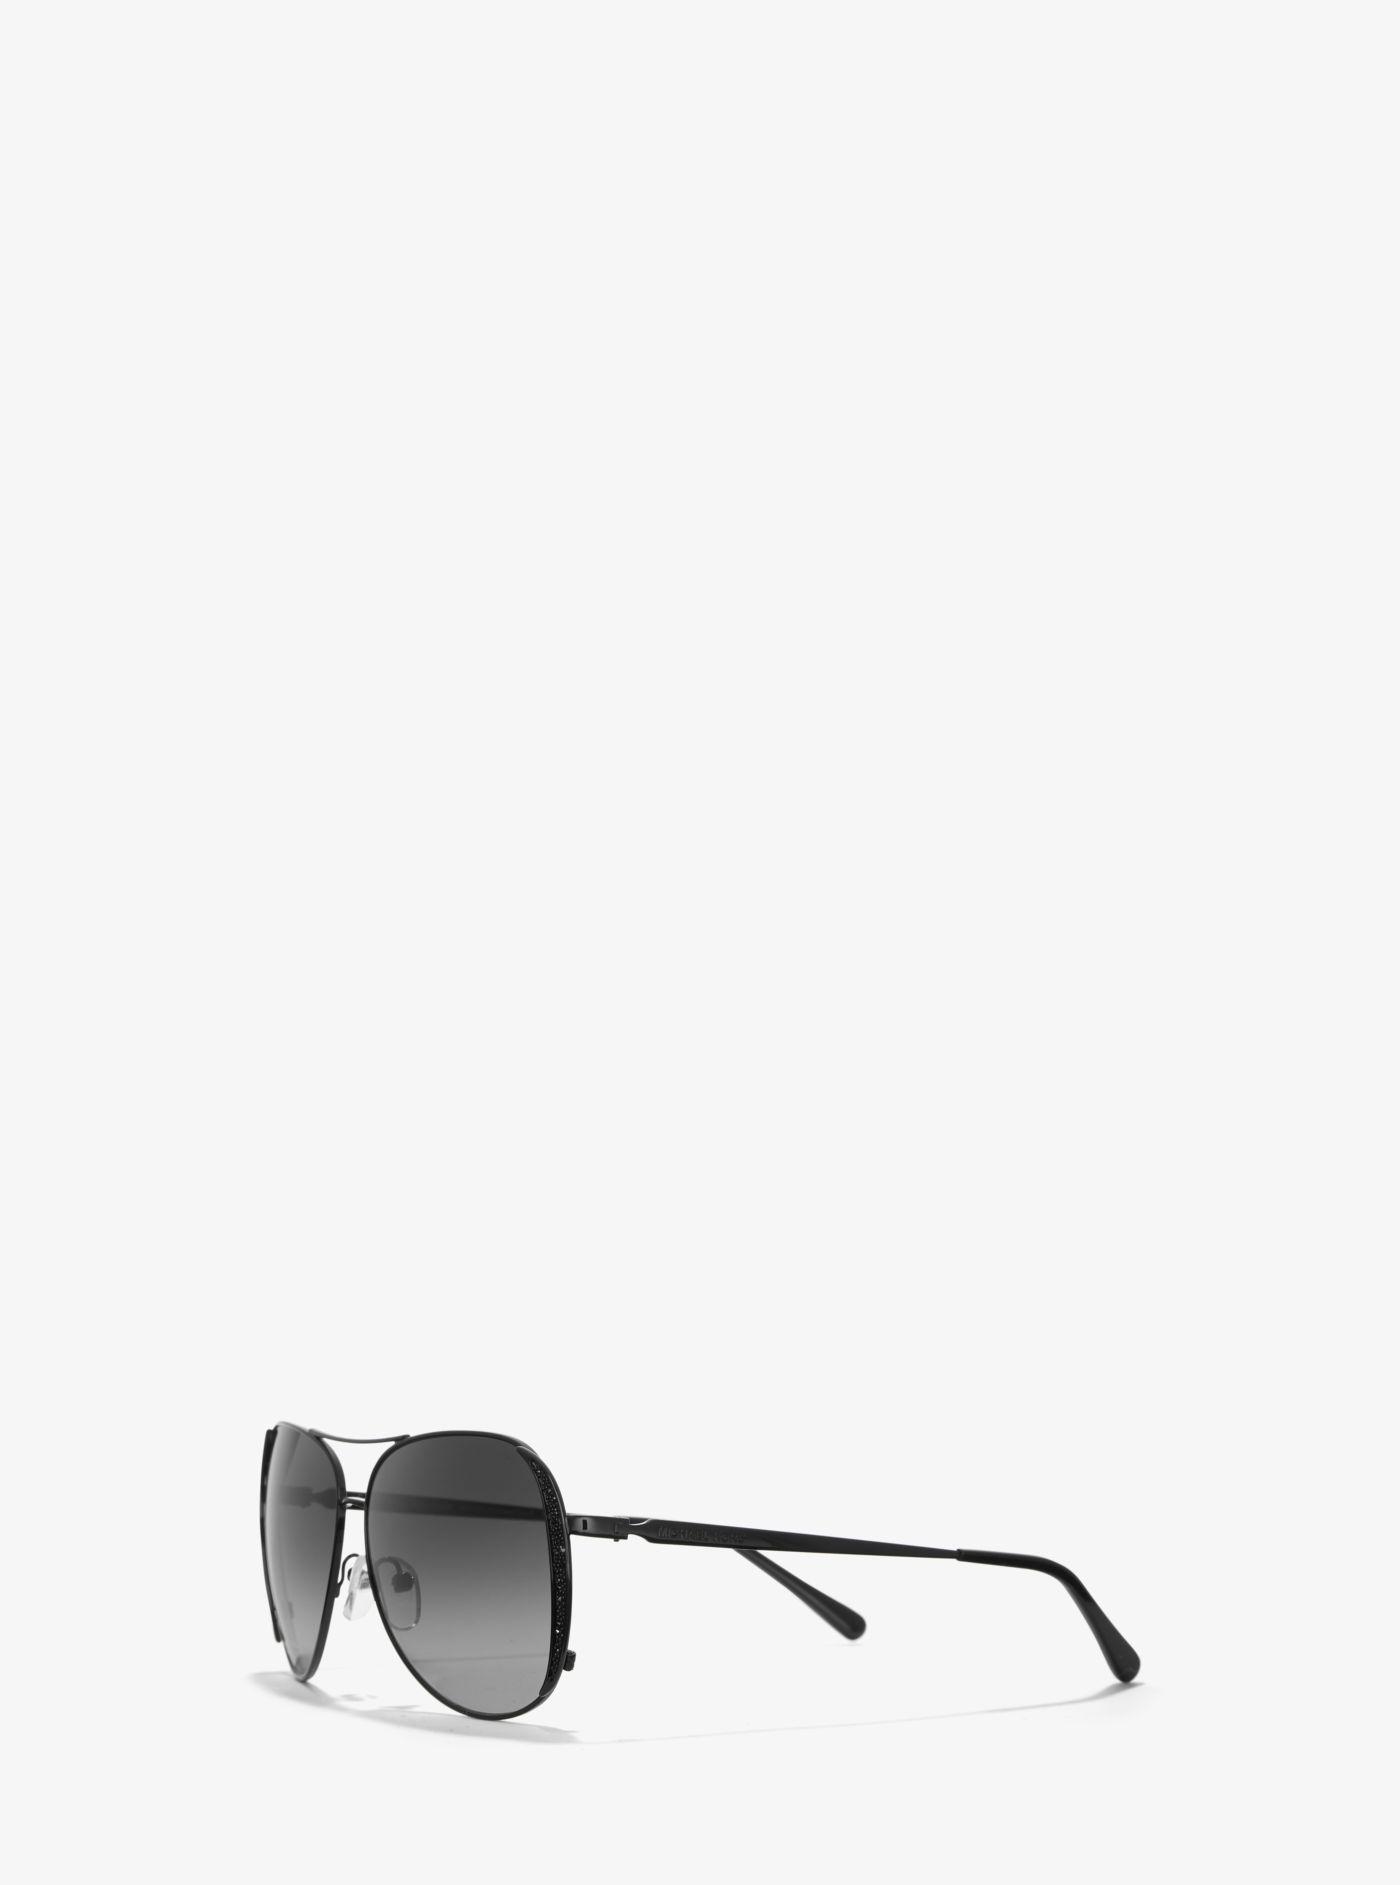 Michael Kors Chelsea Glam Sunglasses in Black | Lyst